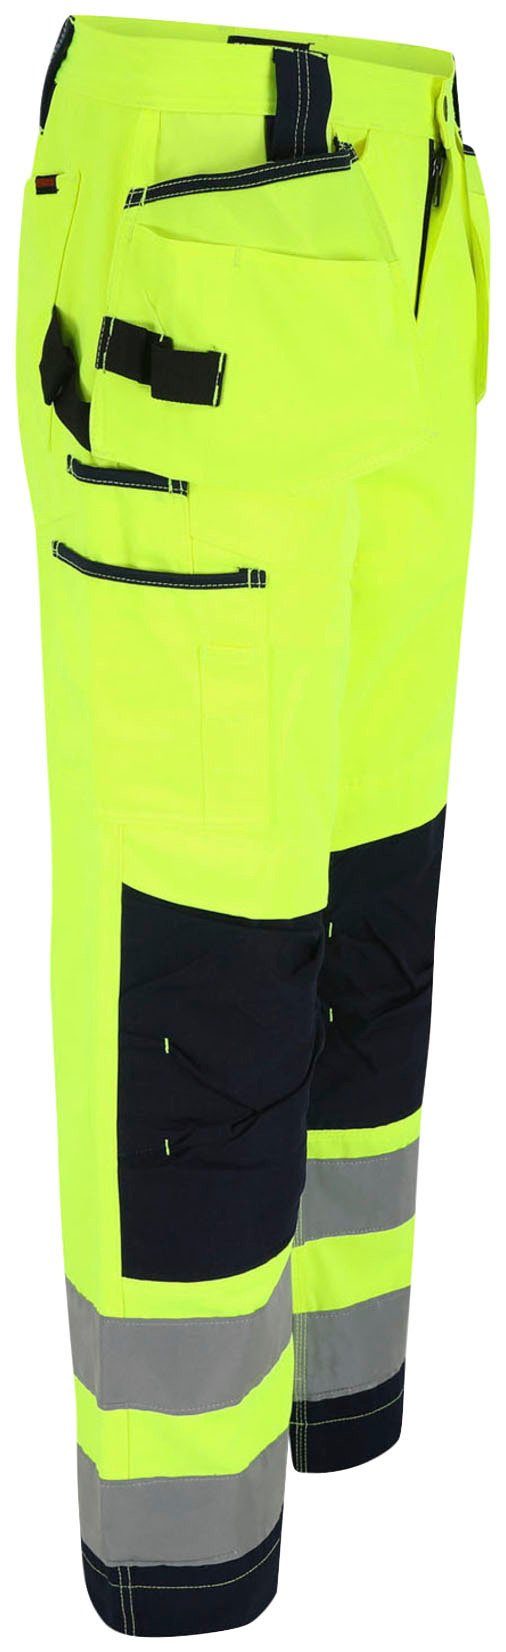 angenehm Taschen, Arbeitshose feste Hose Wasserabweisend, 2 gelb Nageltaschen, viele Herock sehr Styx Warnschutz